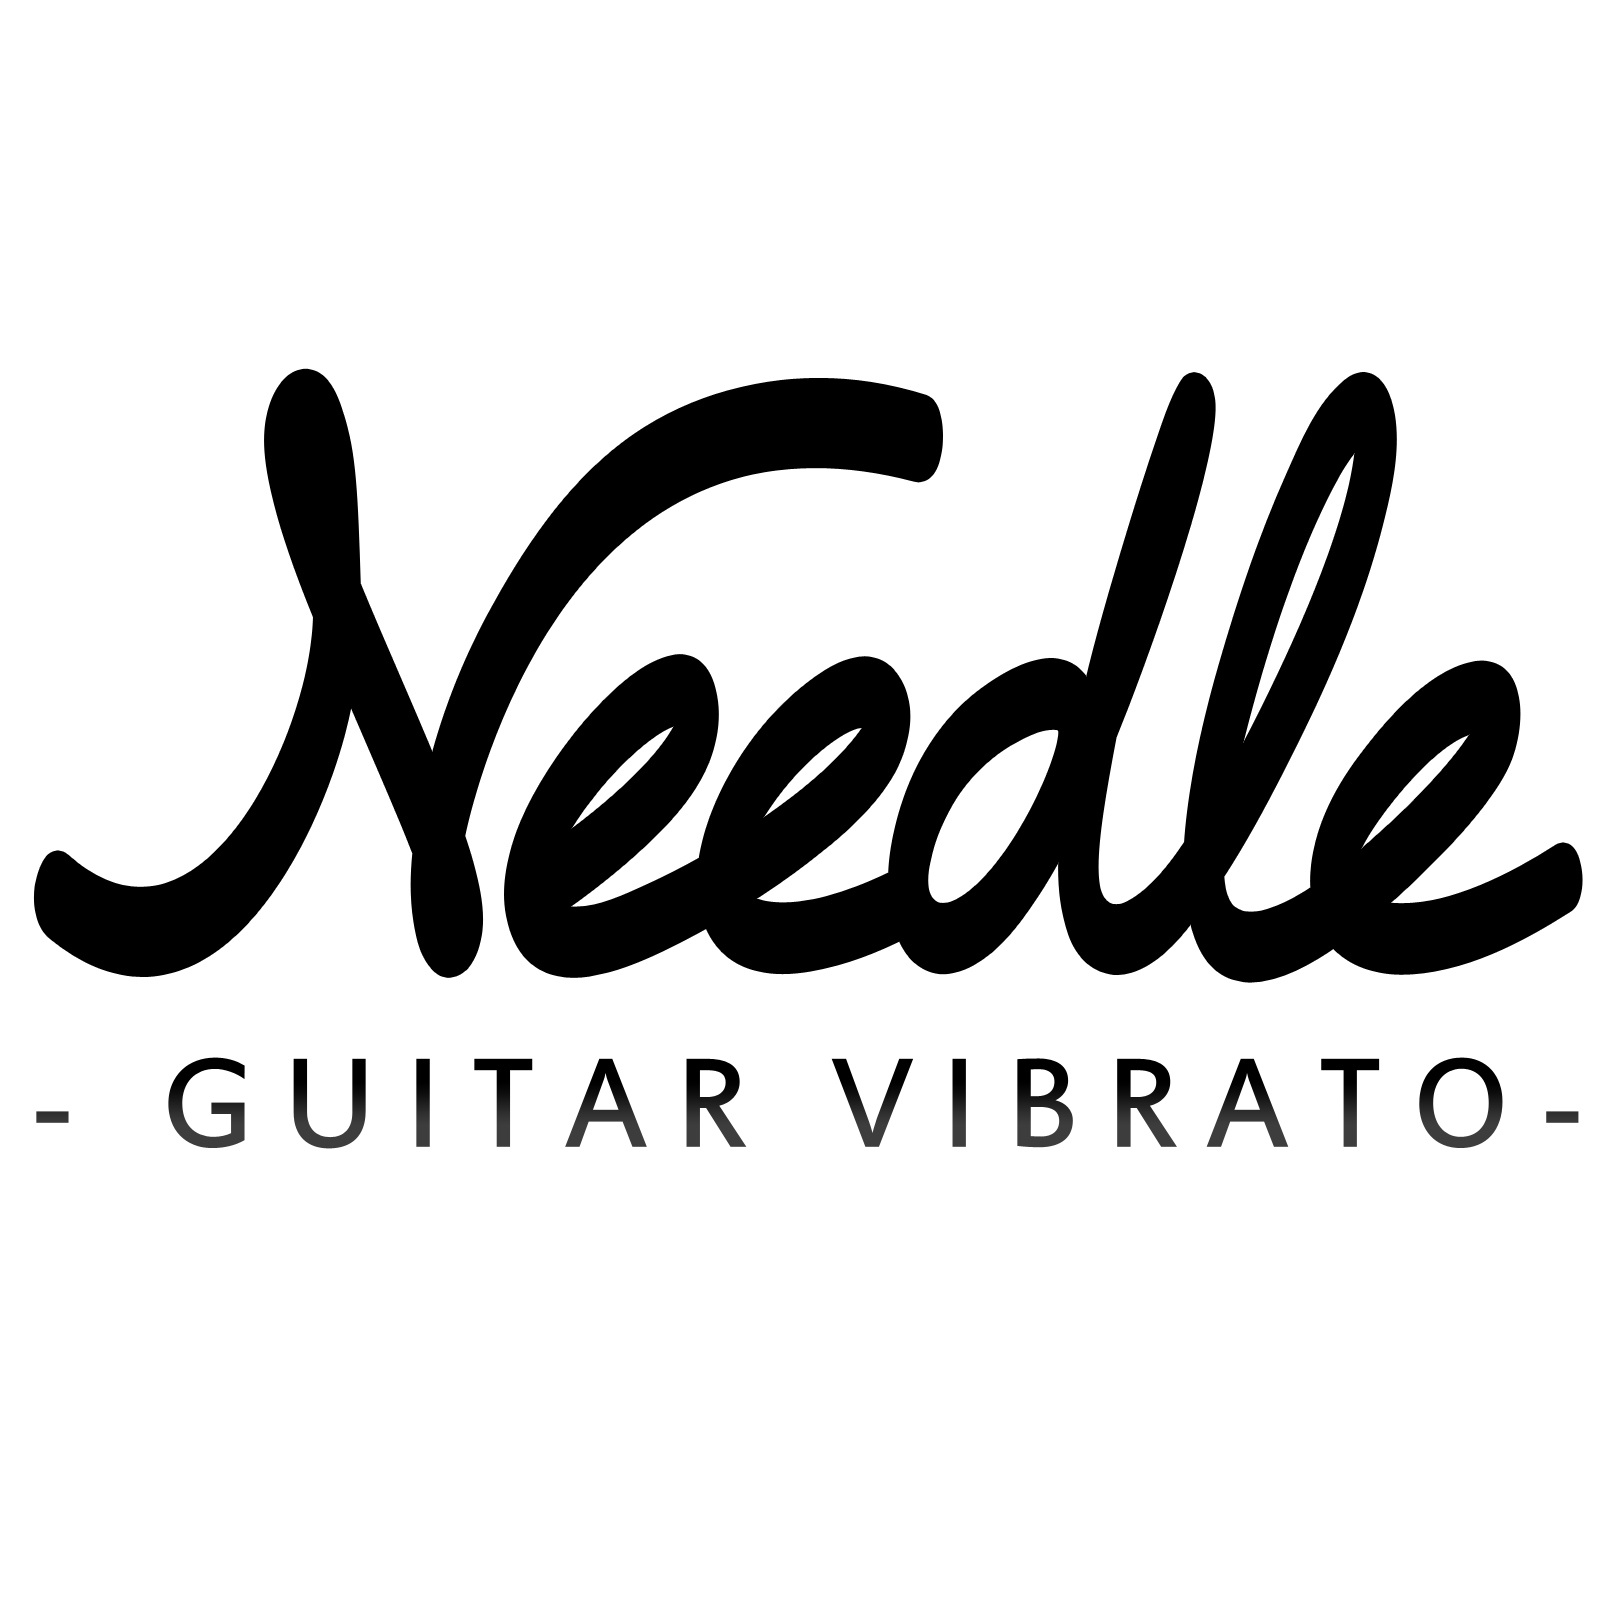 Needle: Le nouveau Vibrato pour Guitare sur Kickstarter